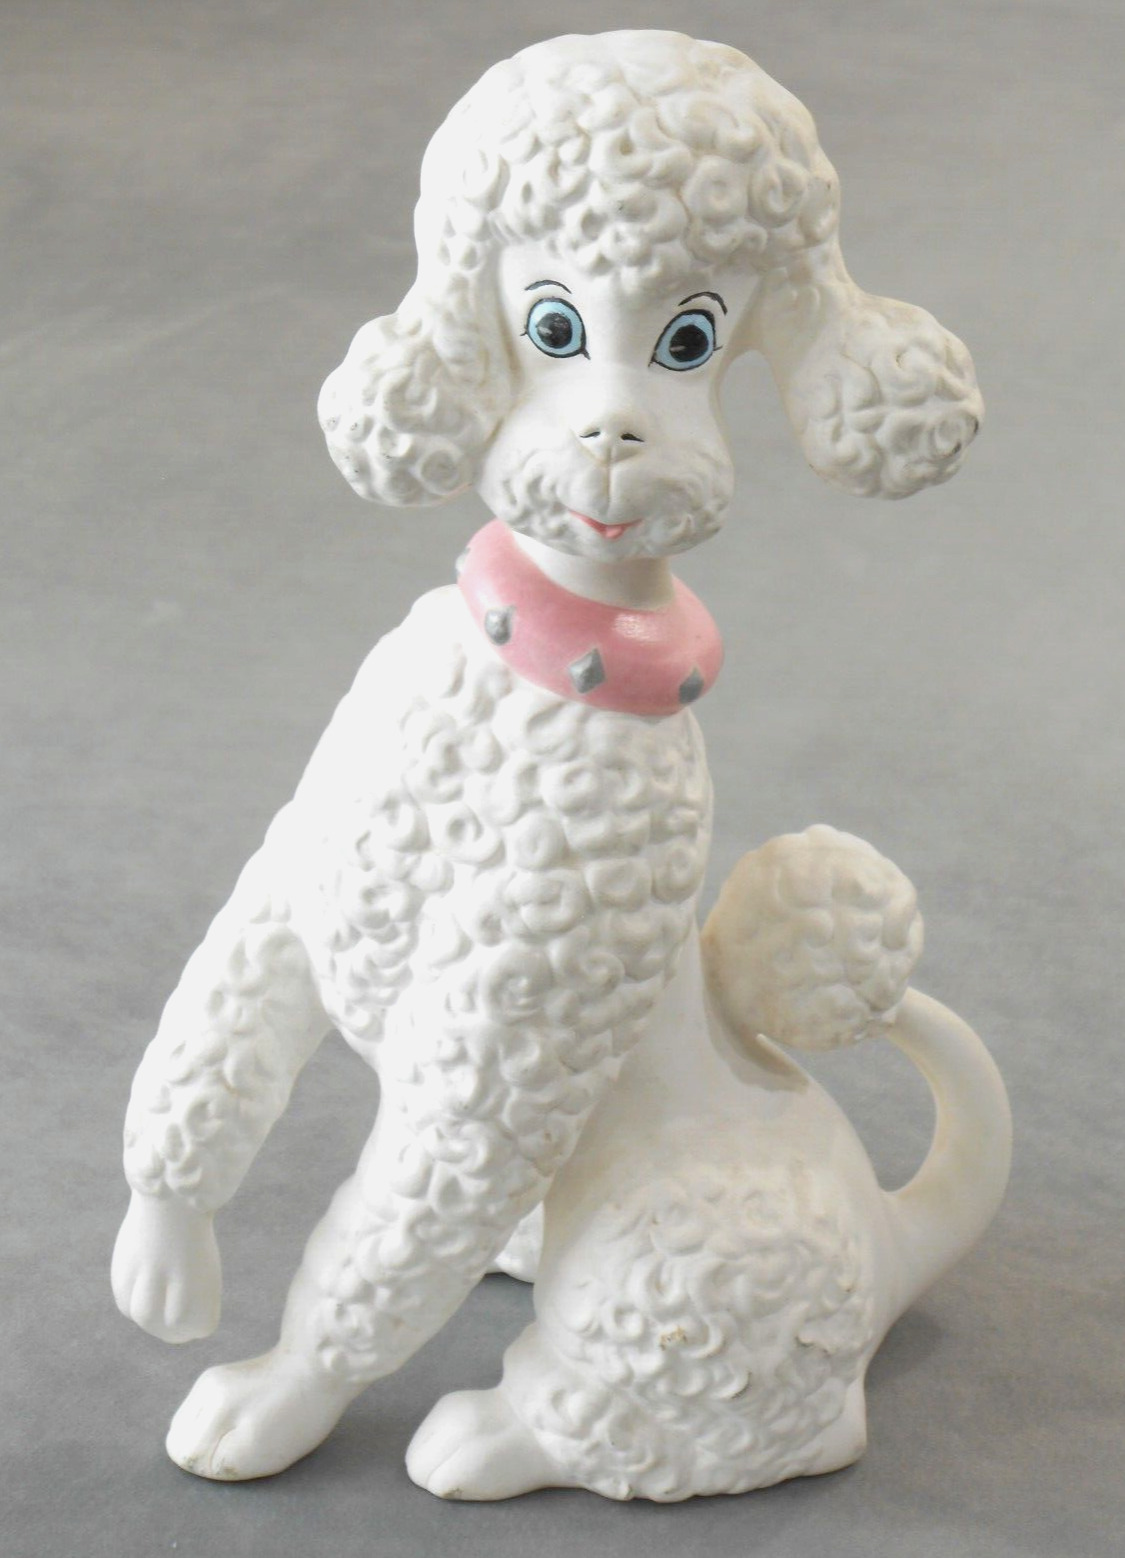 Vintage Poodle Figurine Ceramic White Blue Eyes Pink Collar Signed 1969